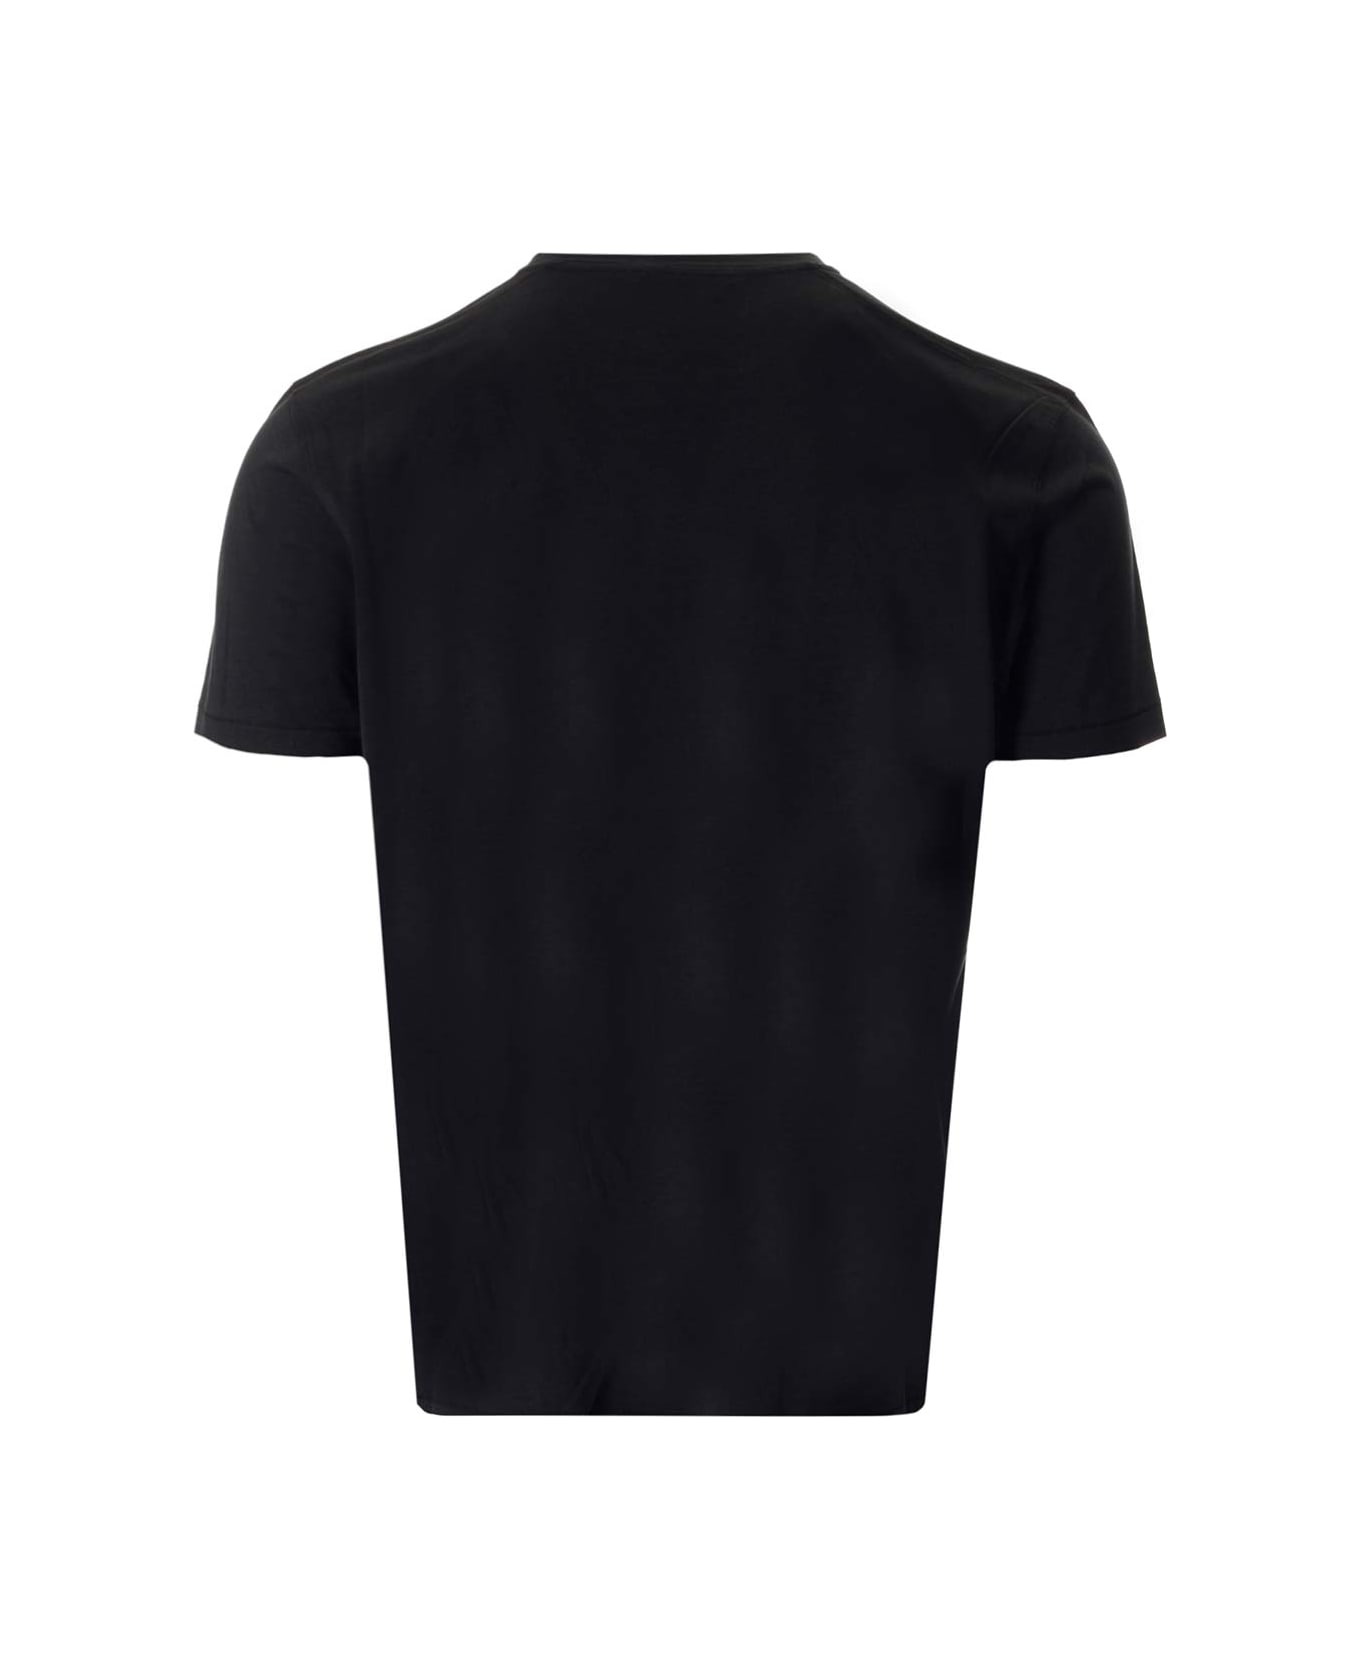 Tom Ford Black T-shirt - Black